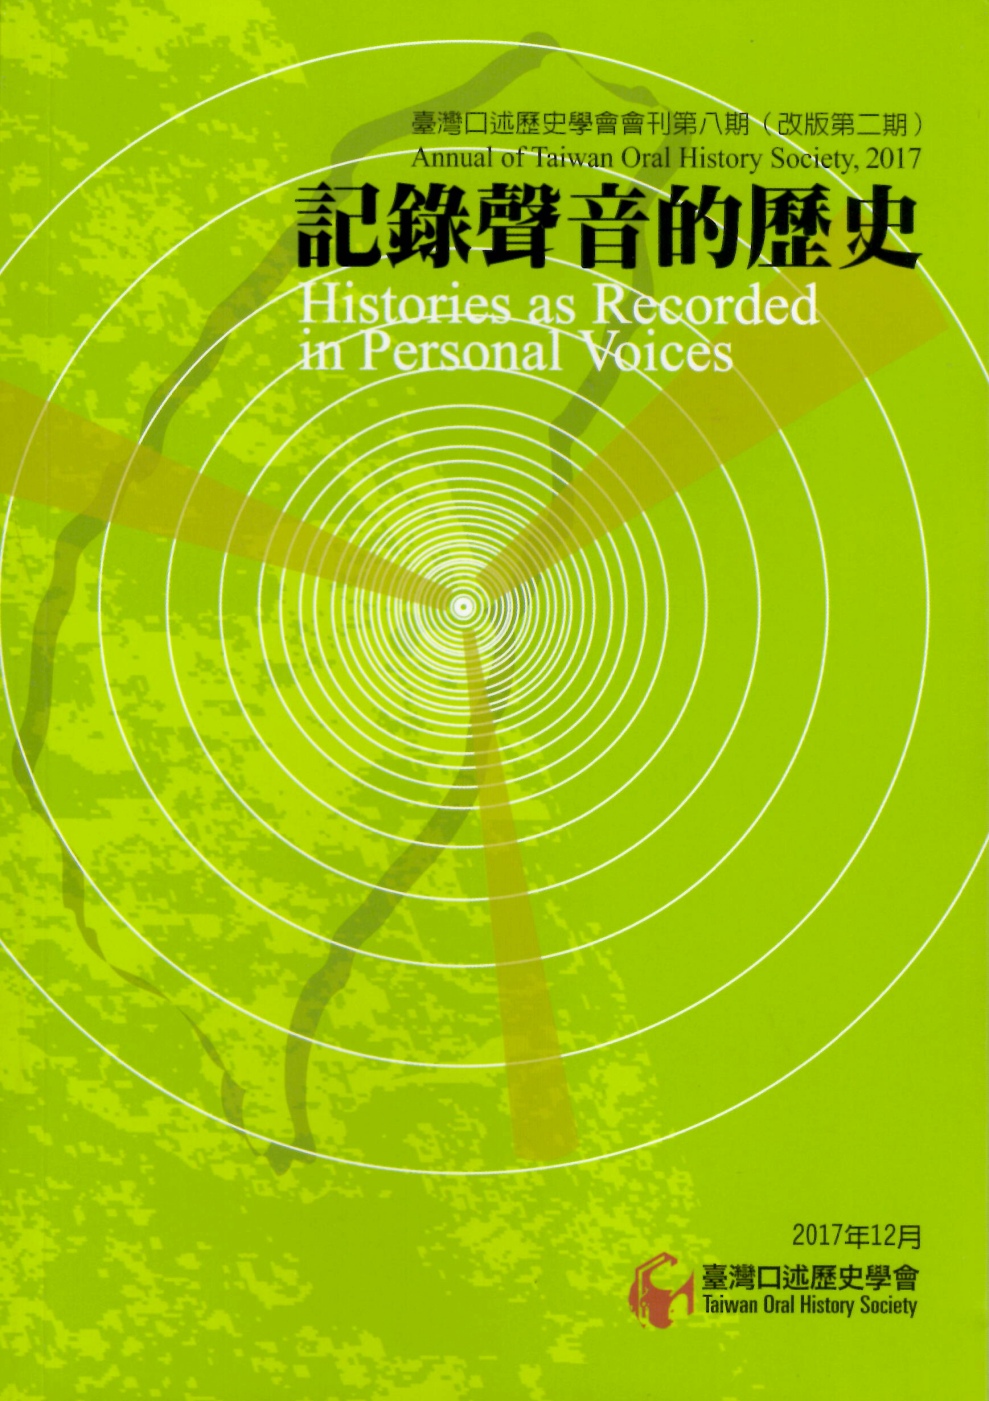 臺灣口述歷史學會會刊第八期：記錄聲音的歷史（改版第二期）